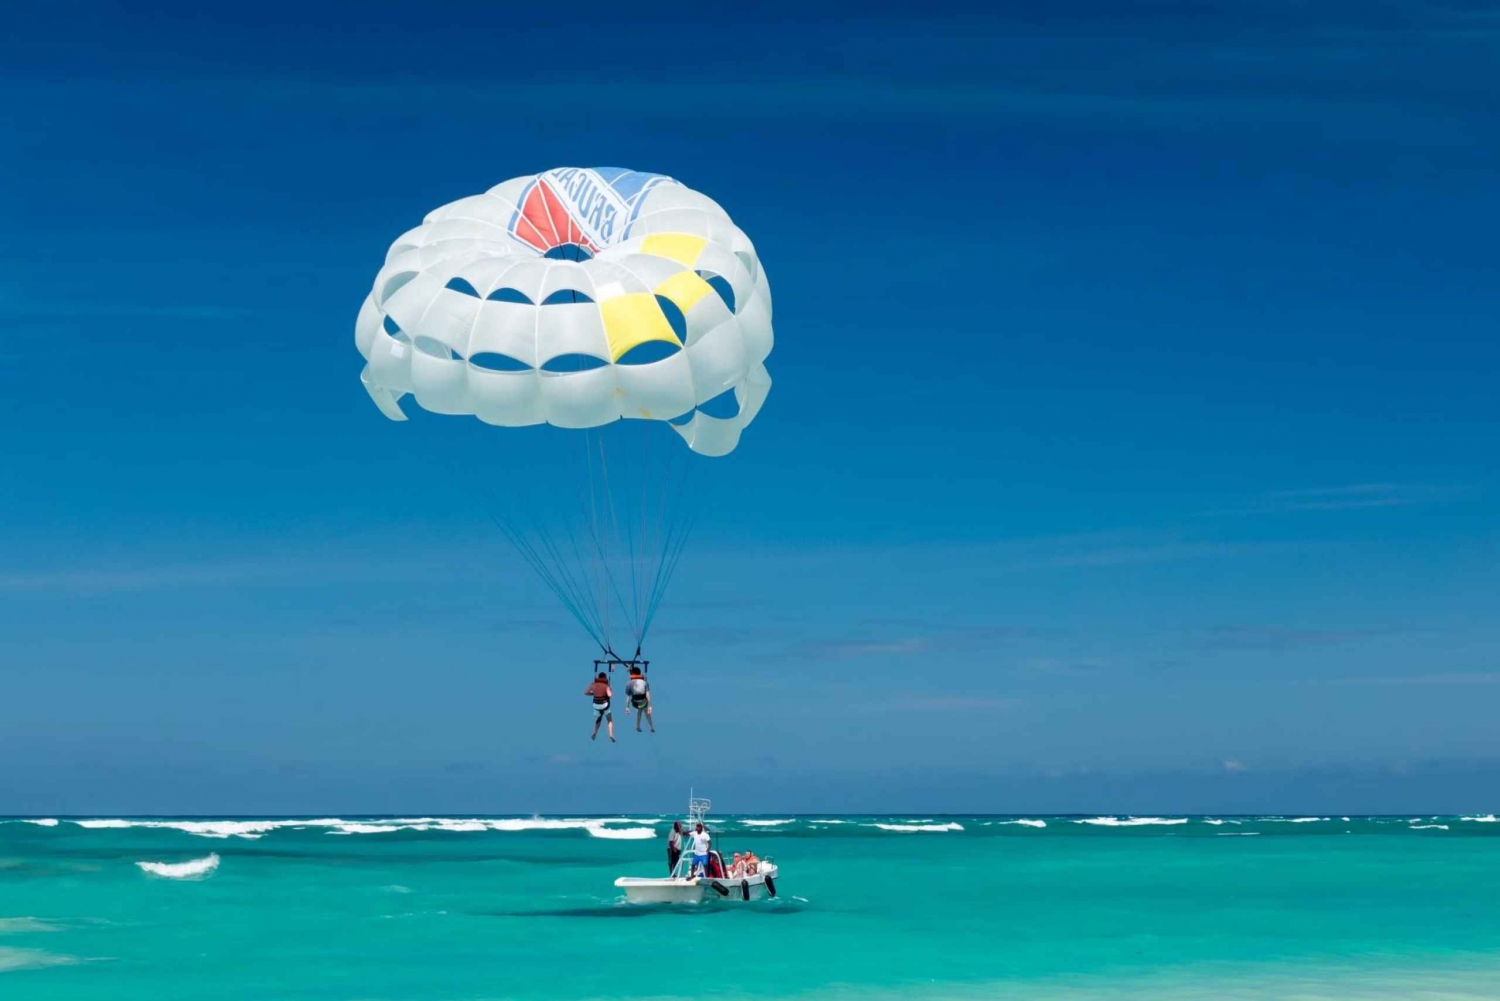 Raya og Coral med speedbåd + parasailing